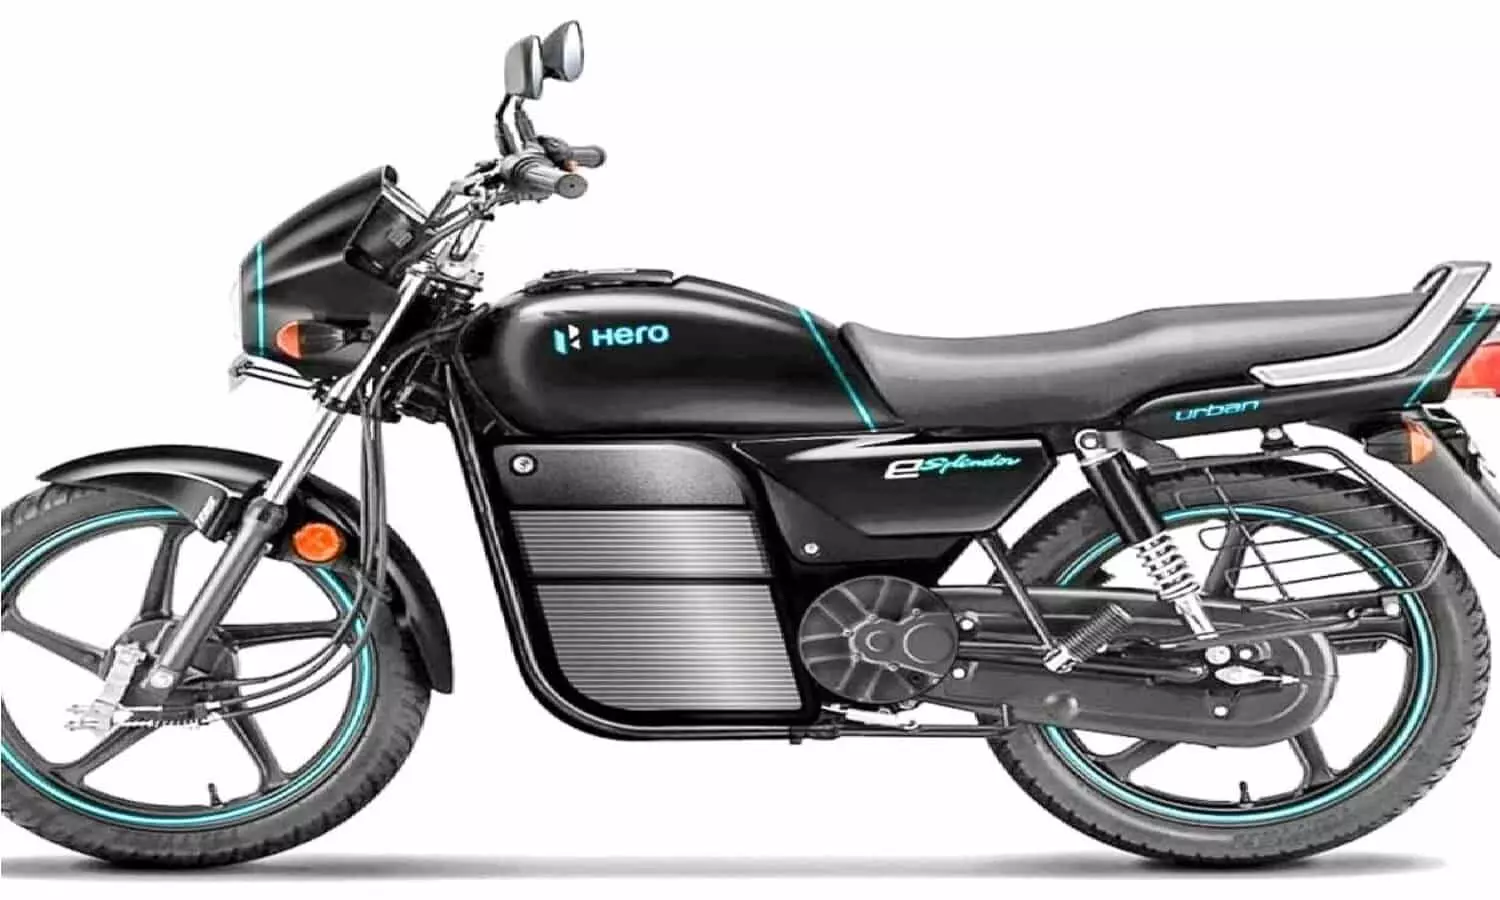 Hero Splendor: हीरो स्प्लेंडर की बाइक में मिलेगा पेट्रोल खर्च से छुटकारा, देखें कीमत और बैटरी रेंज